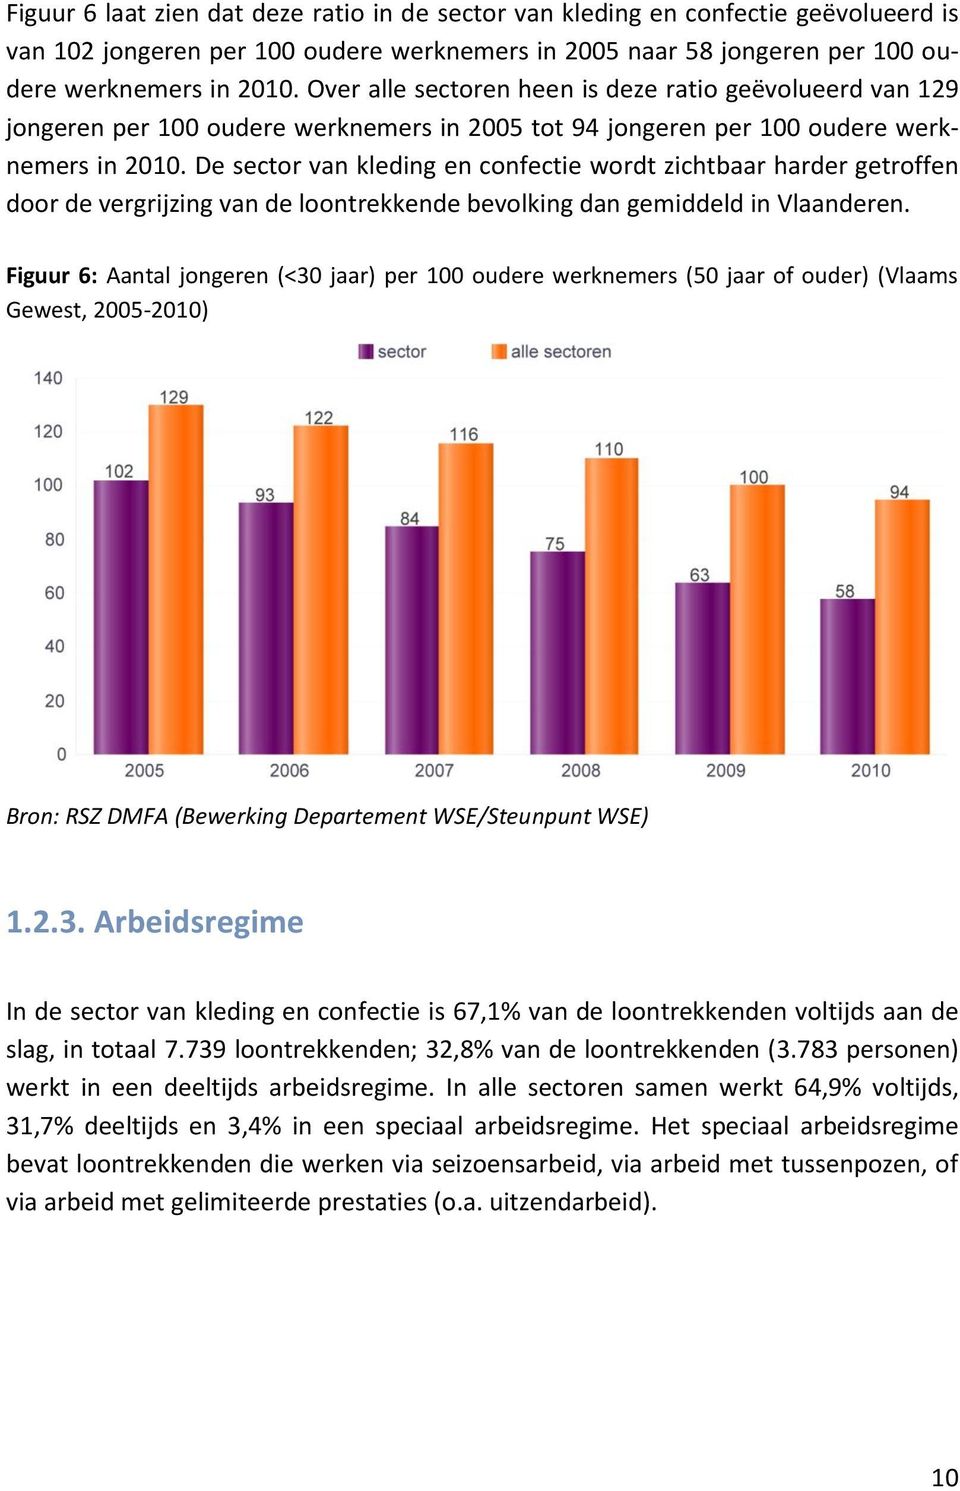 De sector van kleding en confectie wordt zichtbaar harder getroffen door de vergrijzing van de loontrekkende bevolking dan gemiddeld in Vlaanderen.